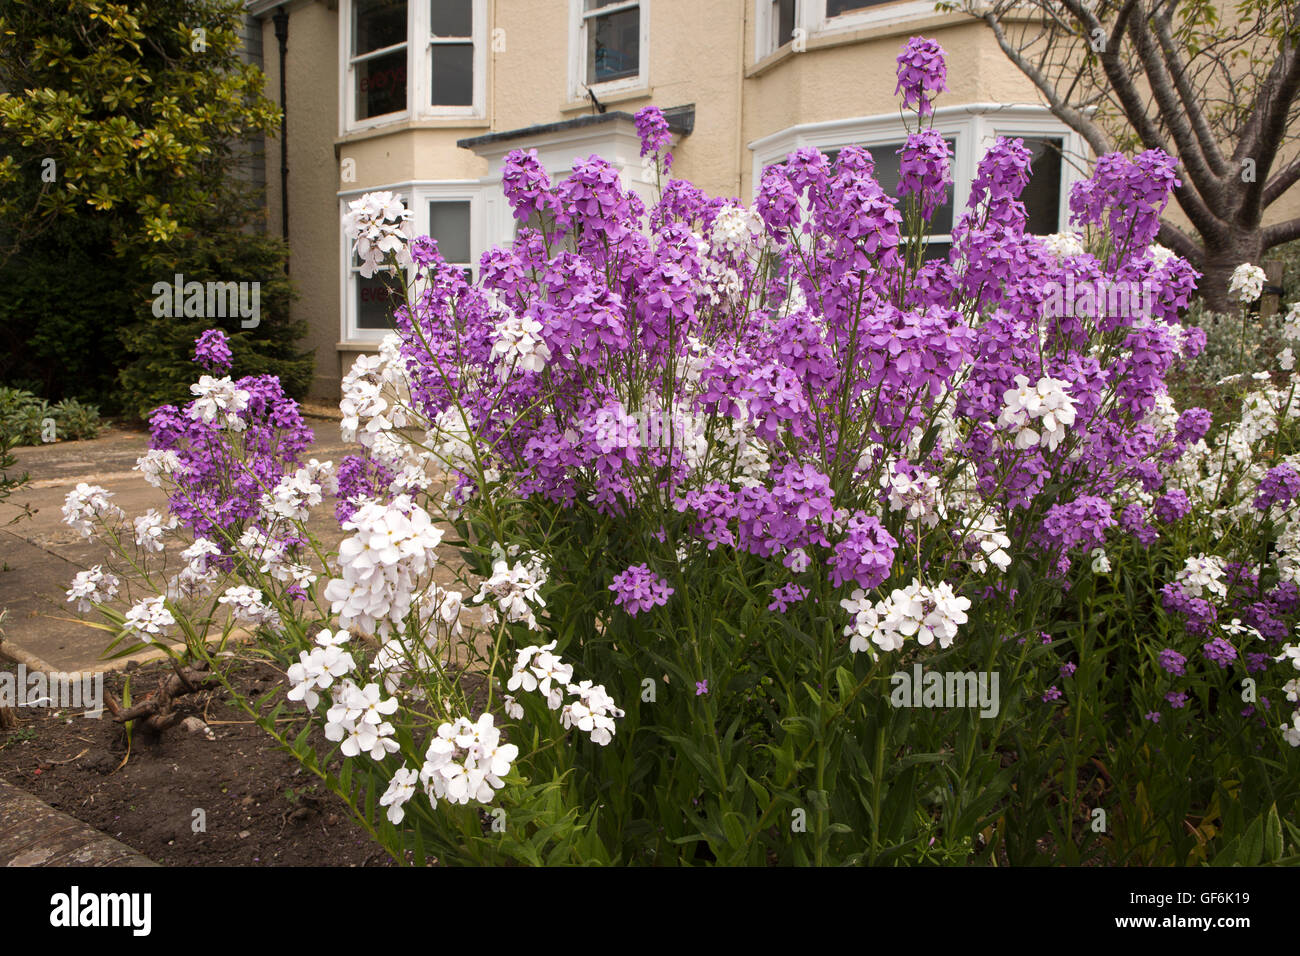 Royaume-uni, Angleterre, Devon, Honiton, New Street, blanc et violet l'honnêteté des fleurs dans le jardin avant Banque D'Images